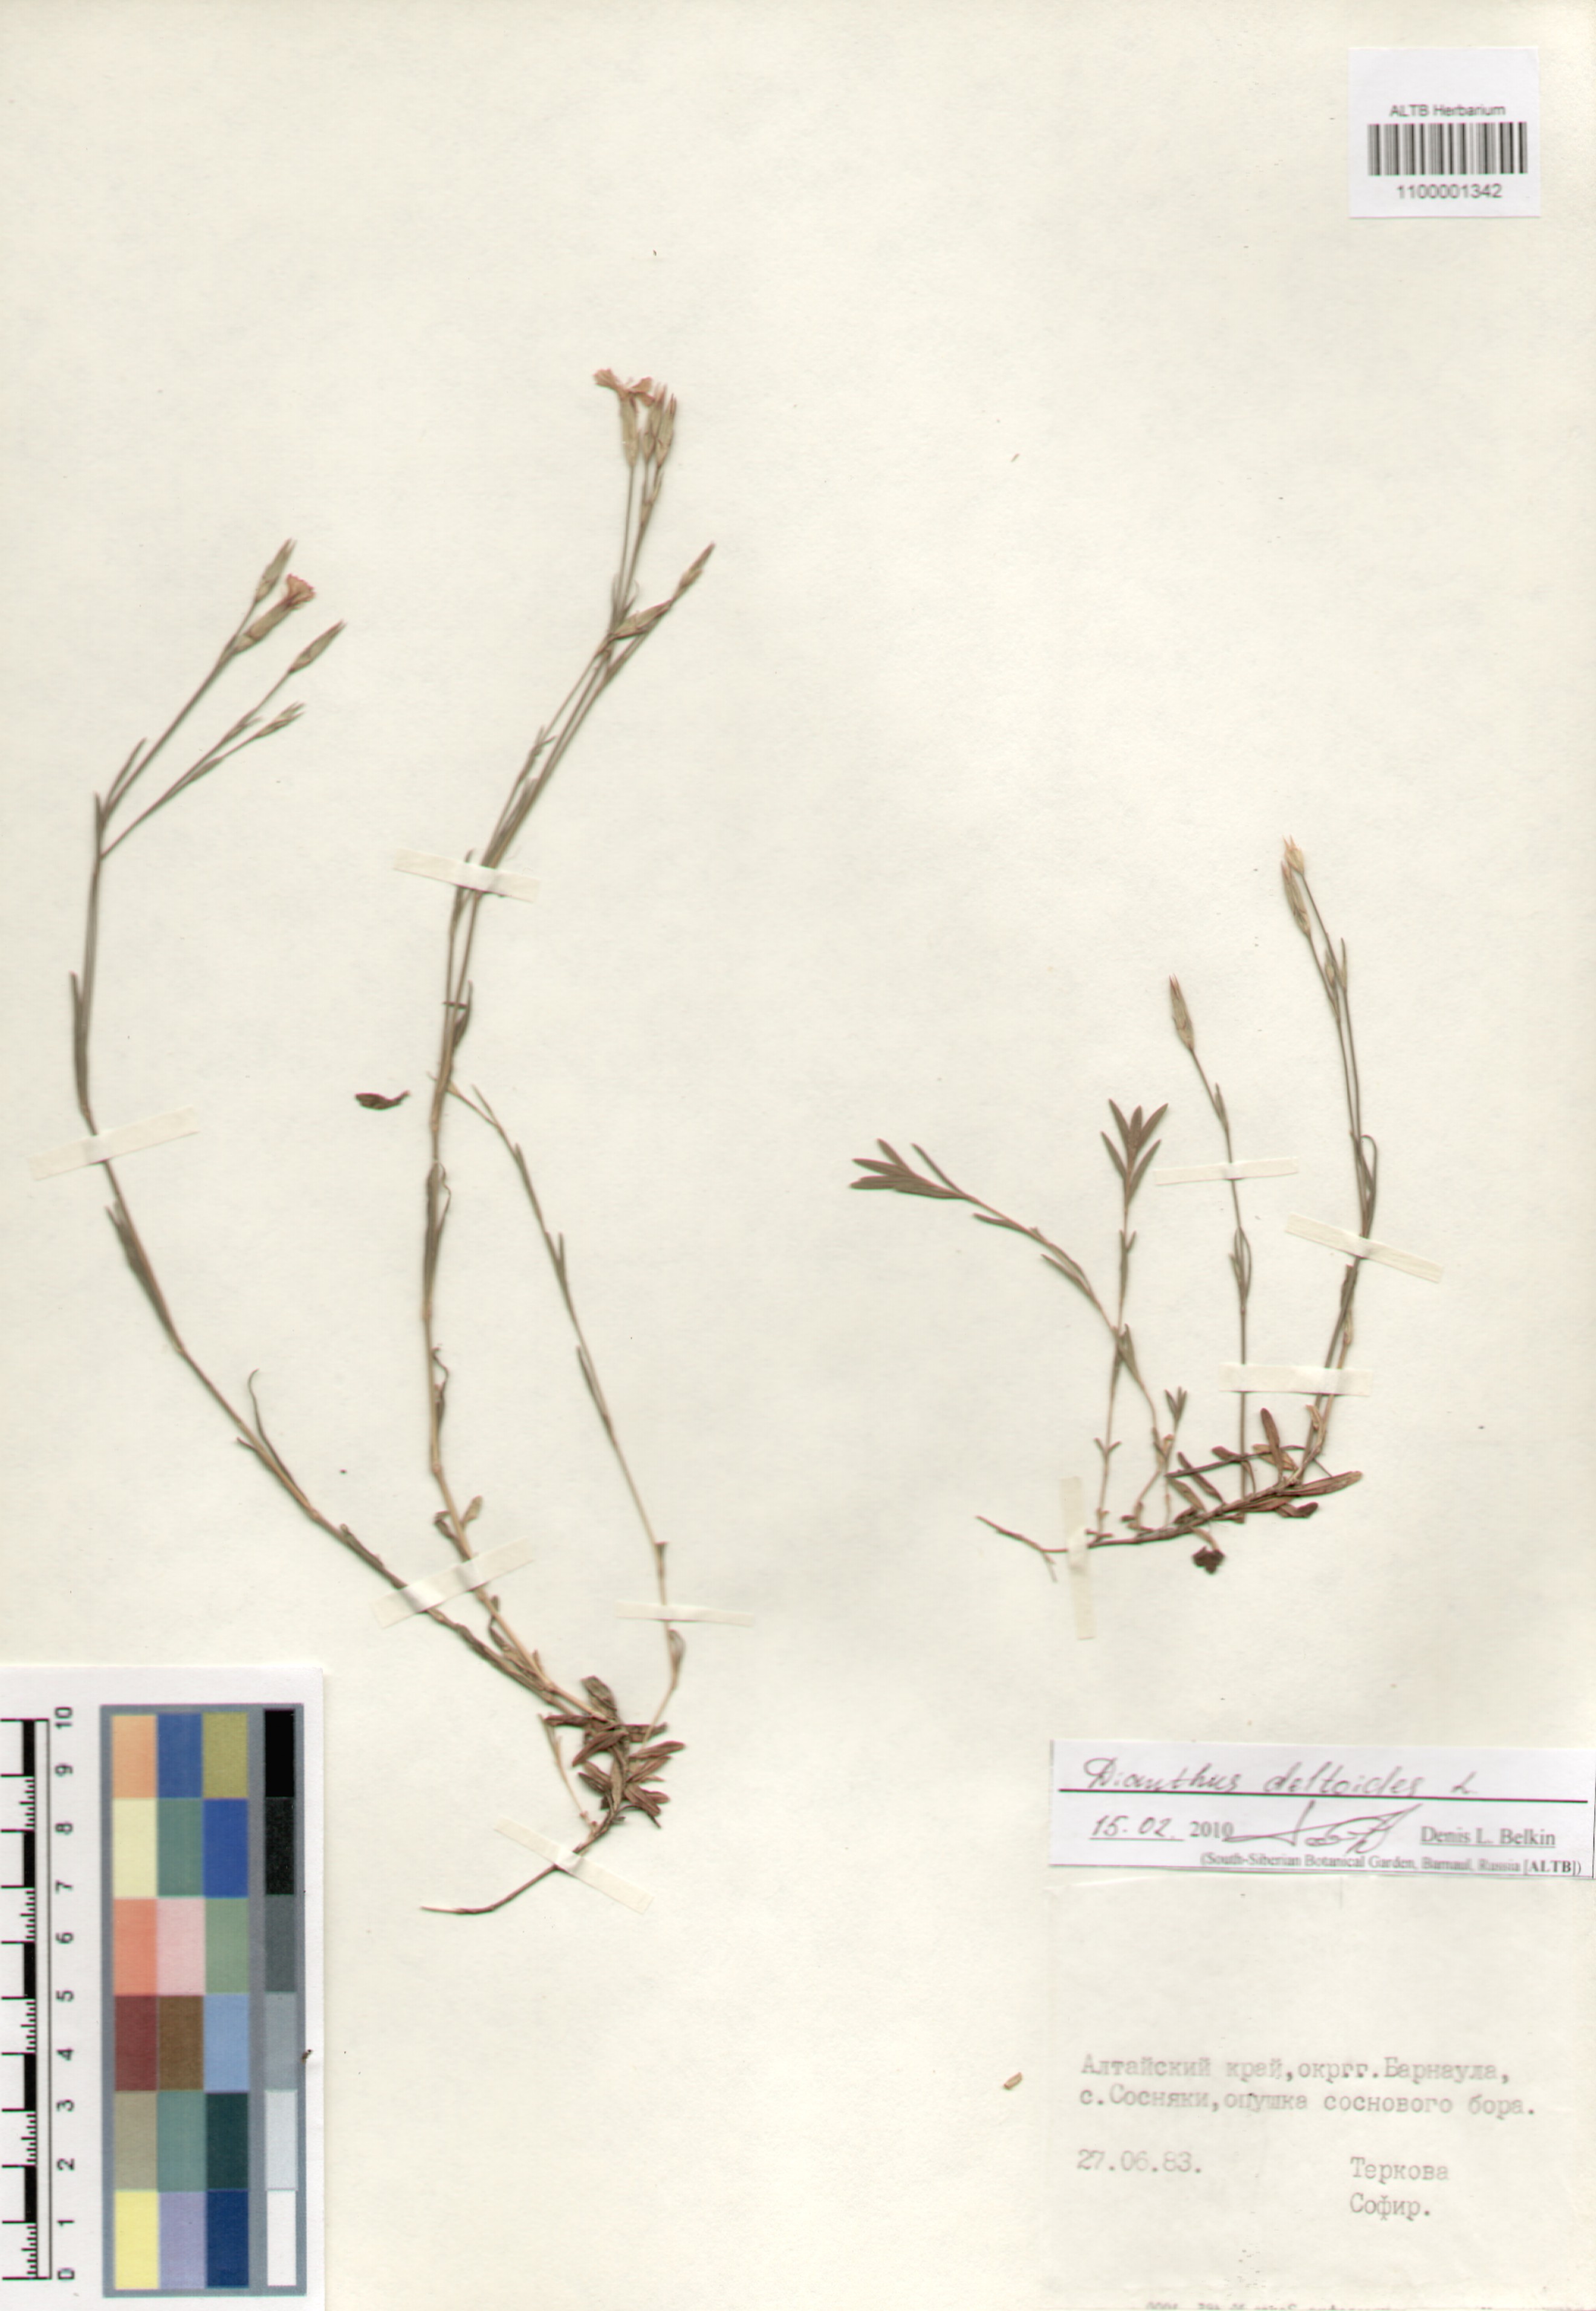 Caryophyllaceae,Dianthus deltoides L.